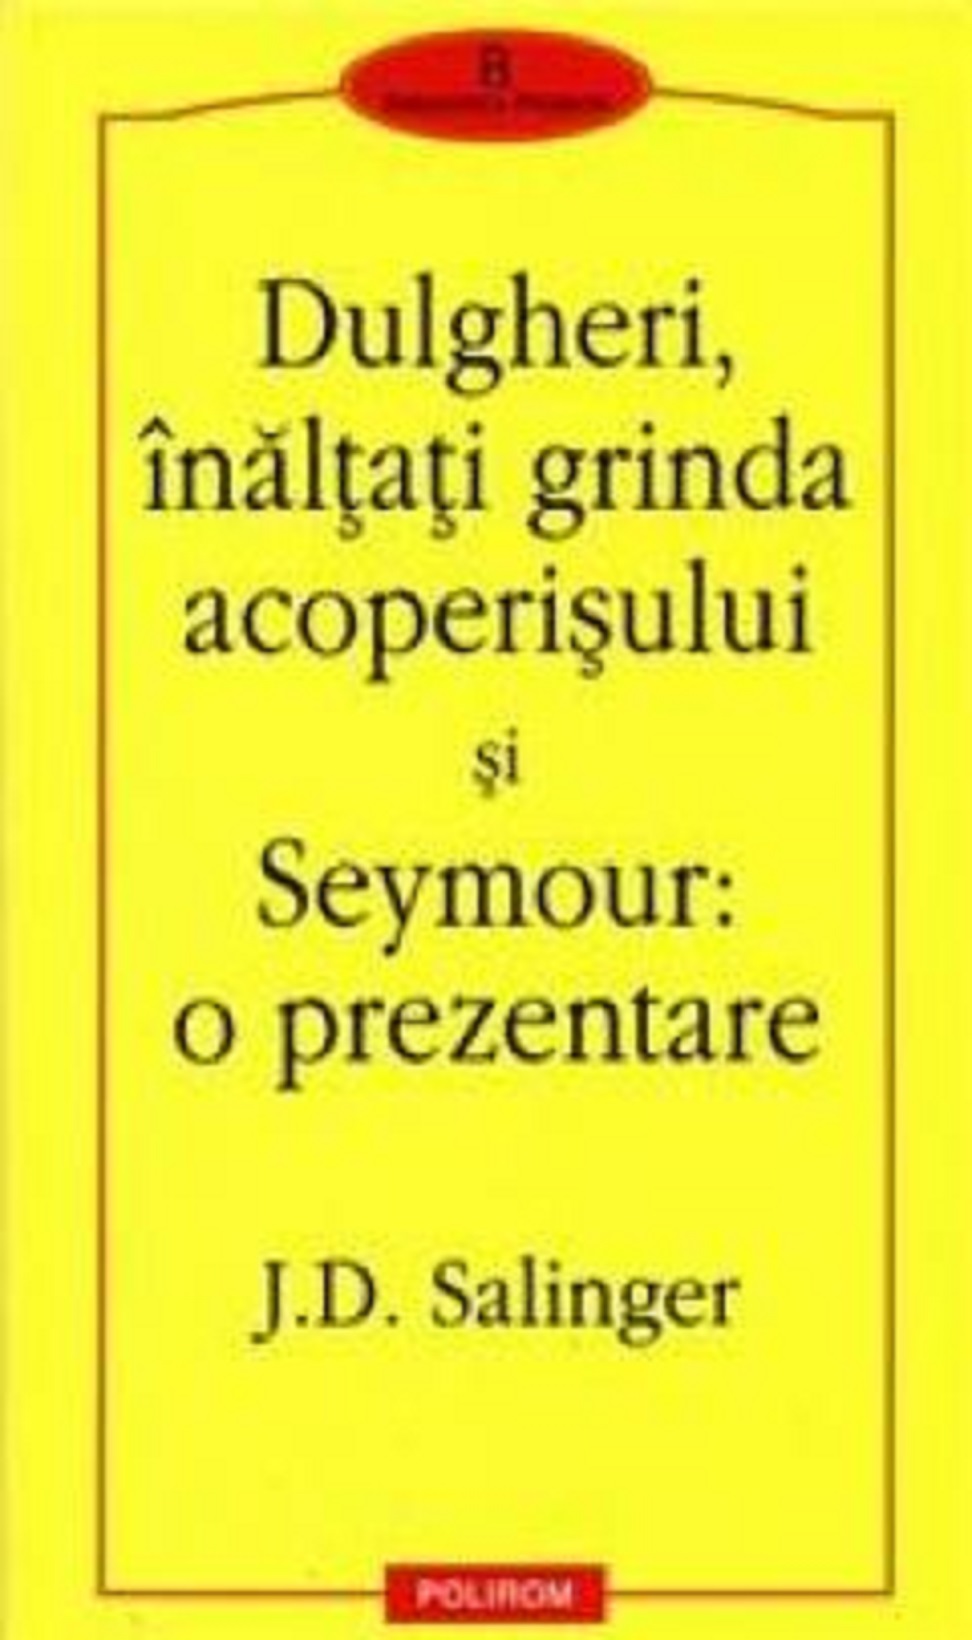 Dulgheri, inaltati grinda acoperisului si Seymour: o prezentare | J.D. Salinger acoperisului